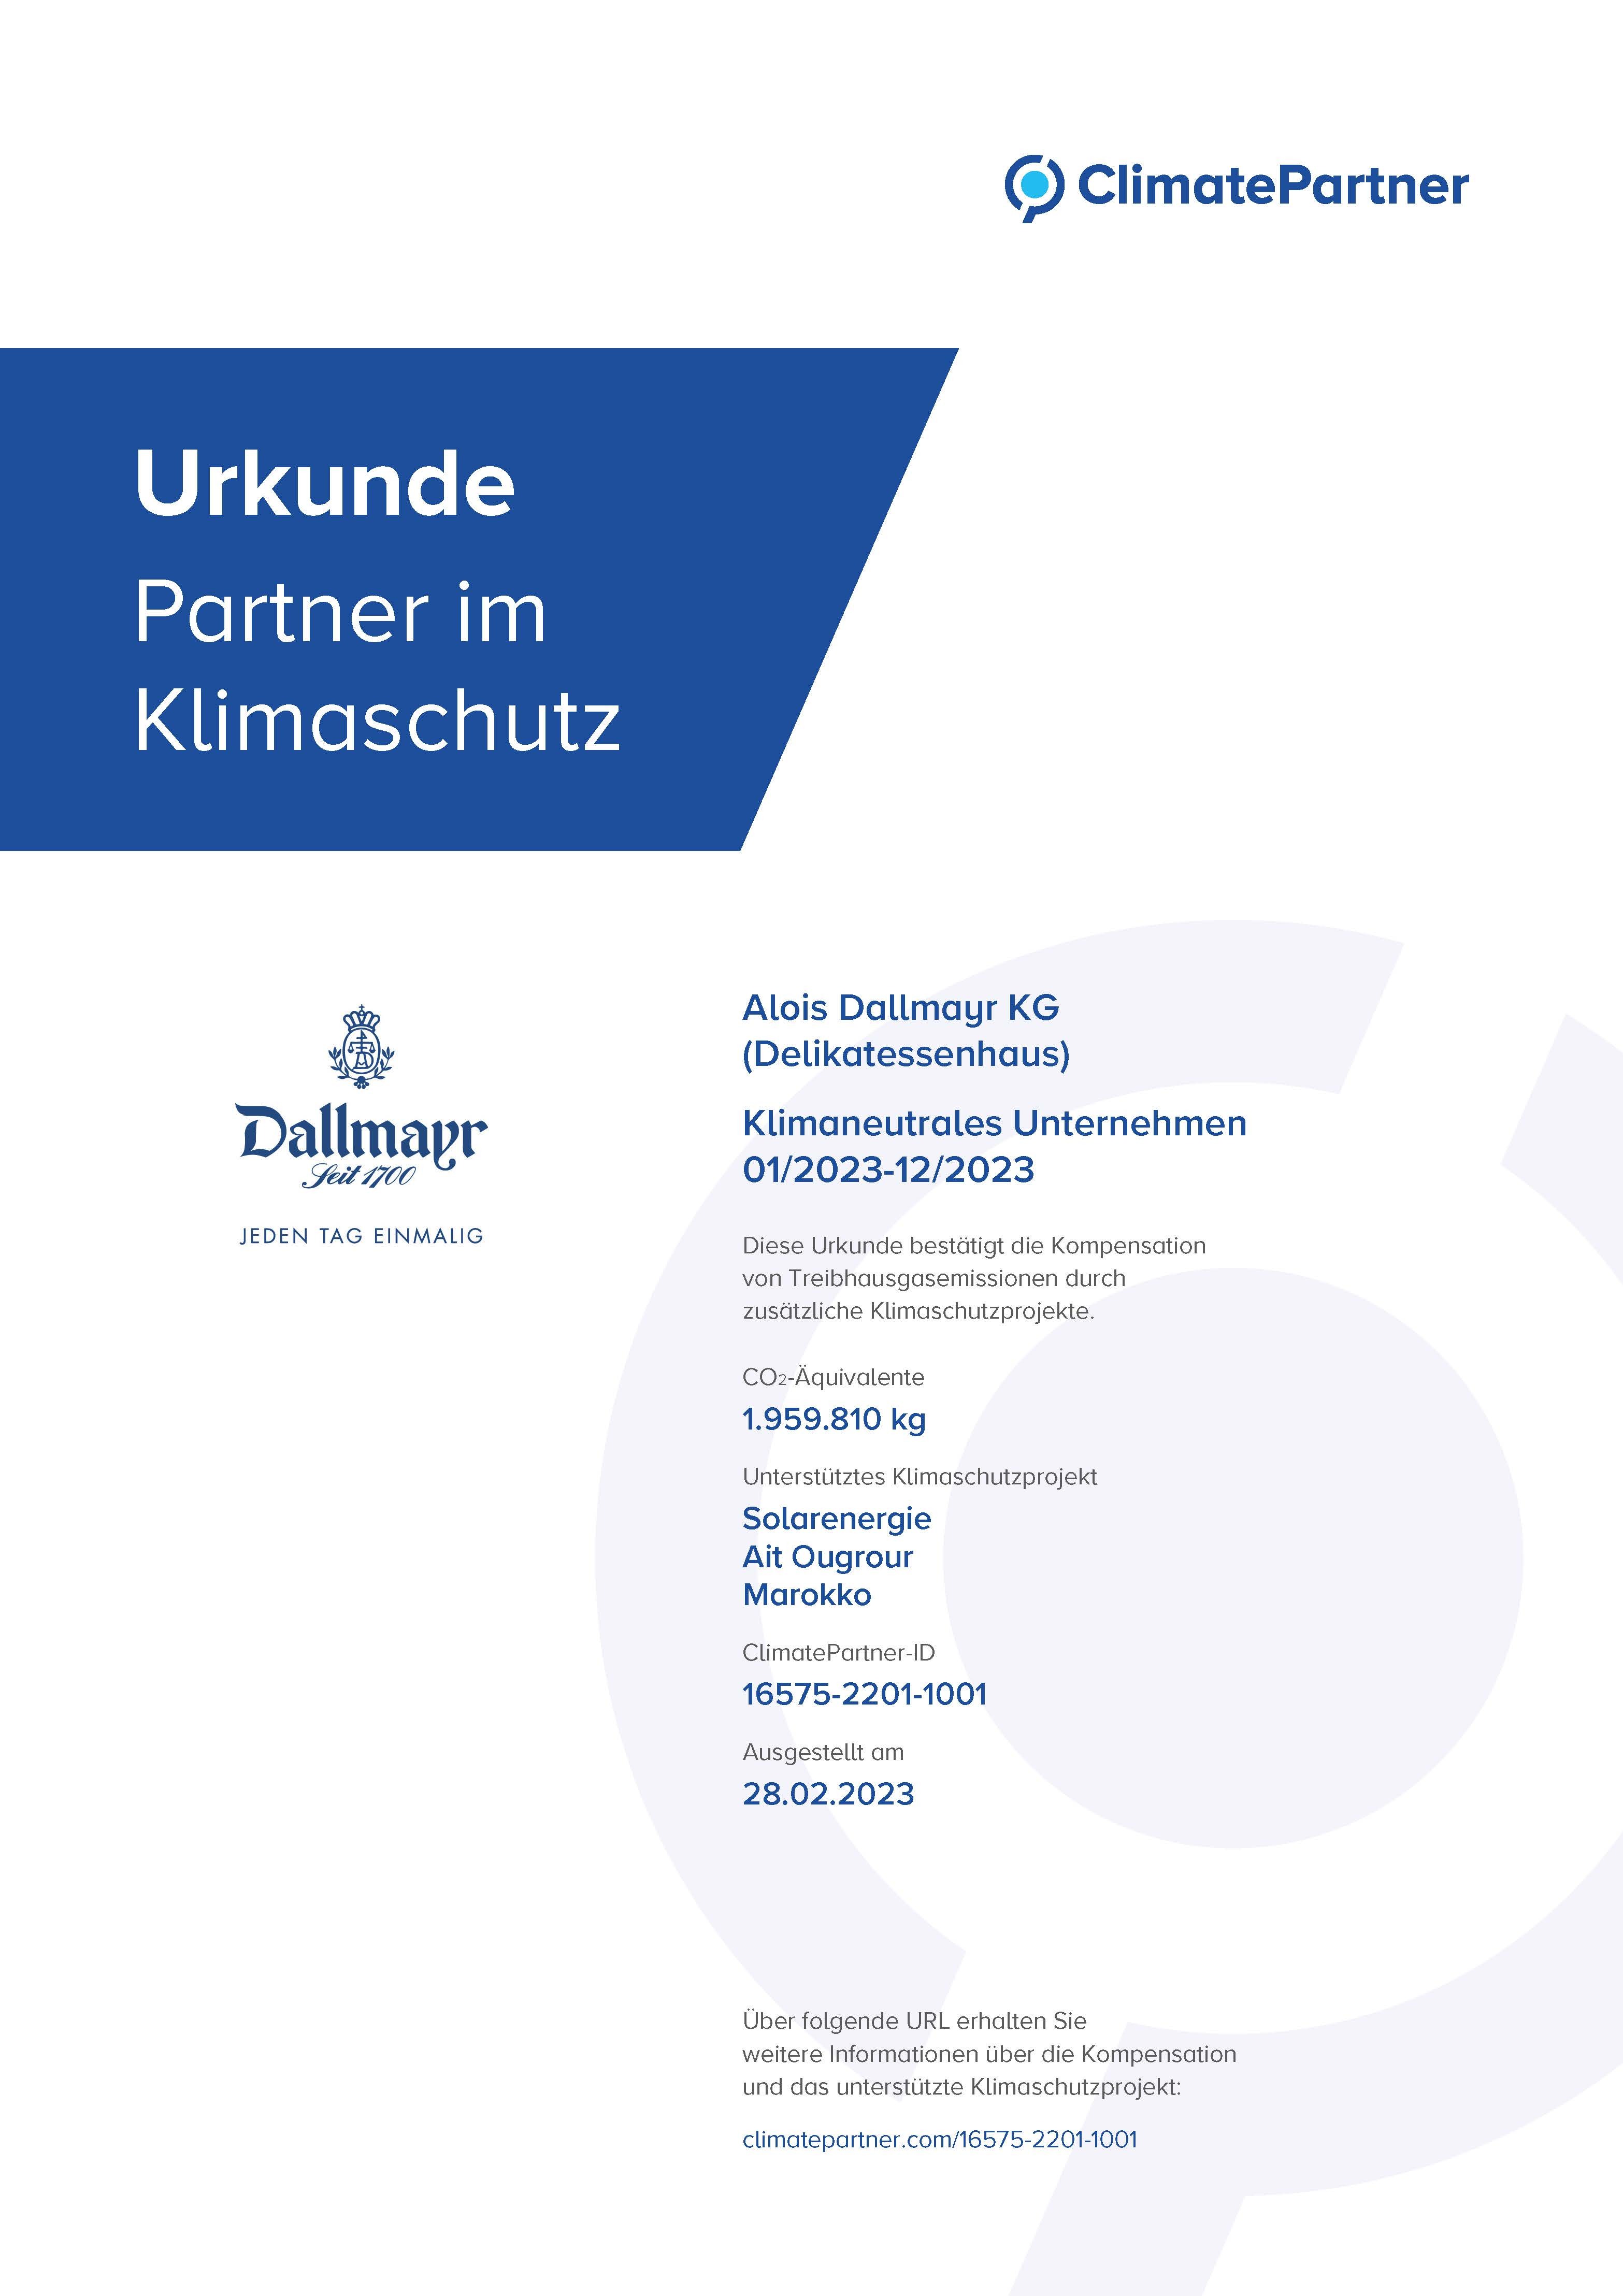 Kimaneutrales_Unternehmen_ClimatePartner_Urkunde_2023